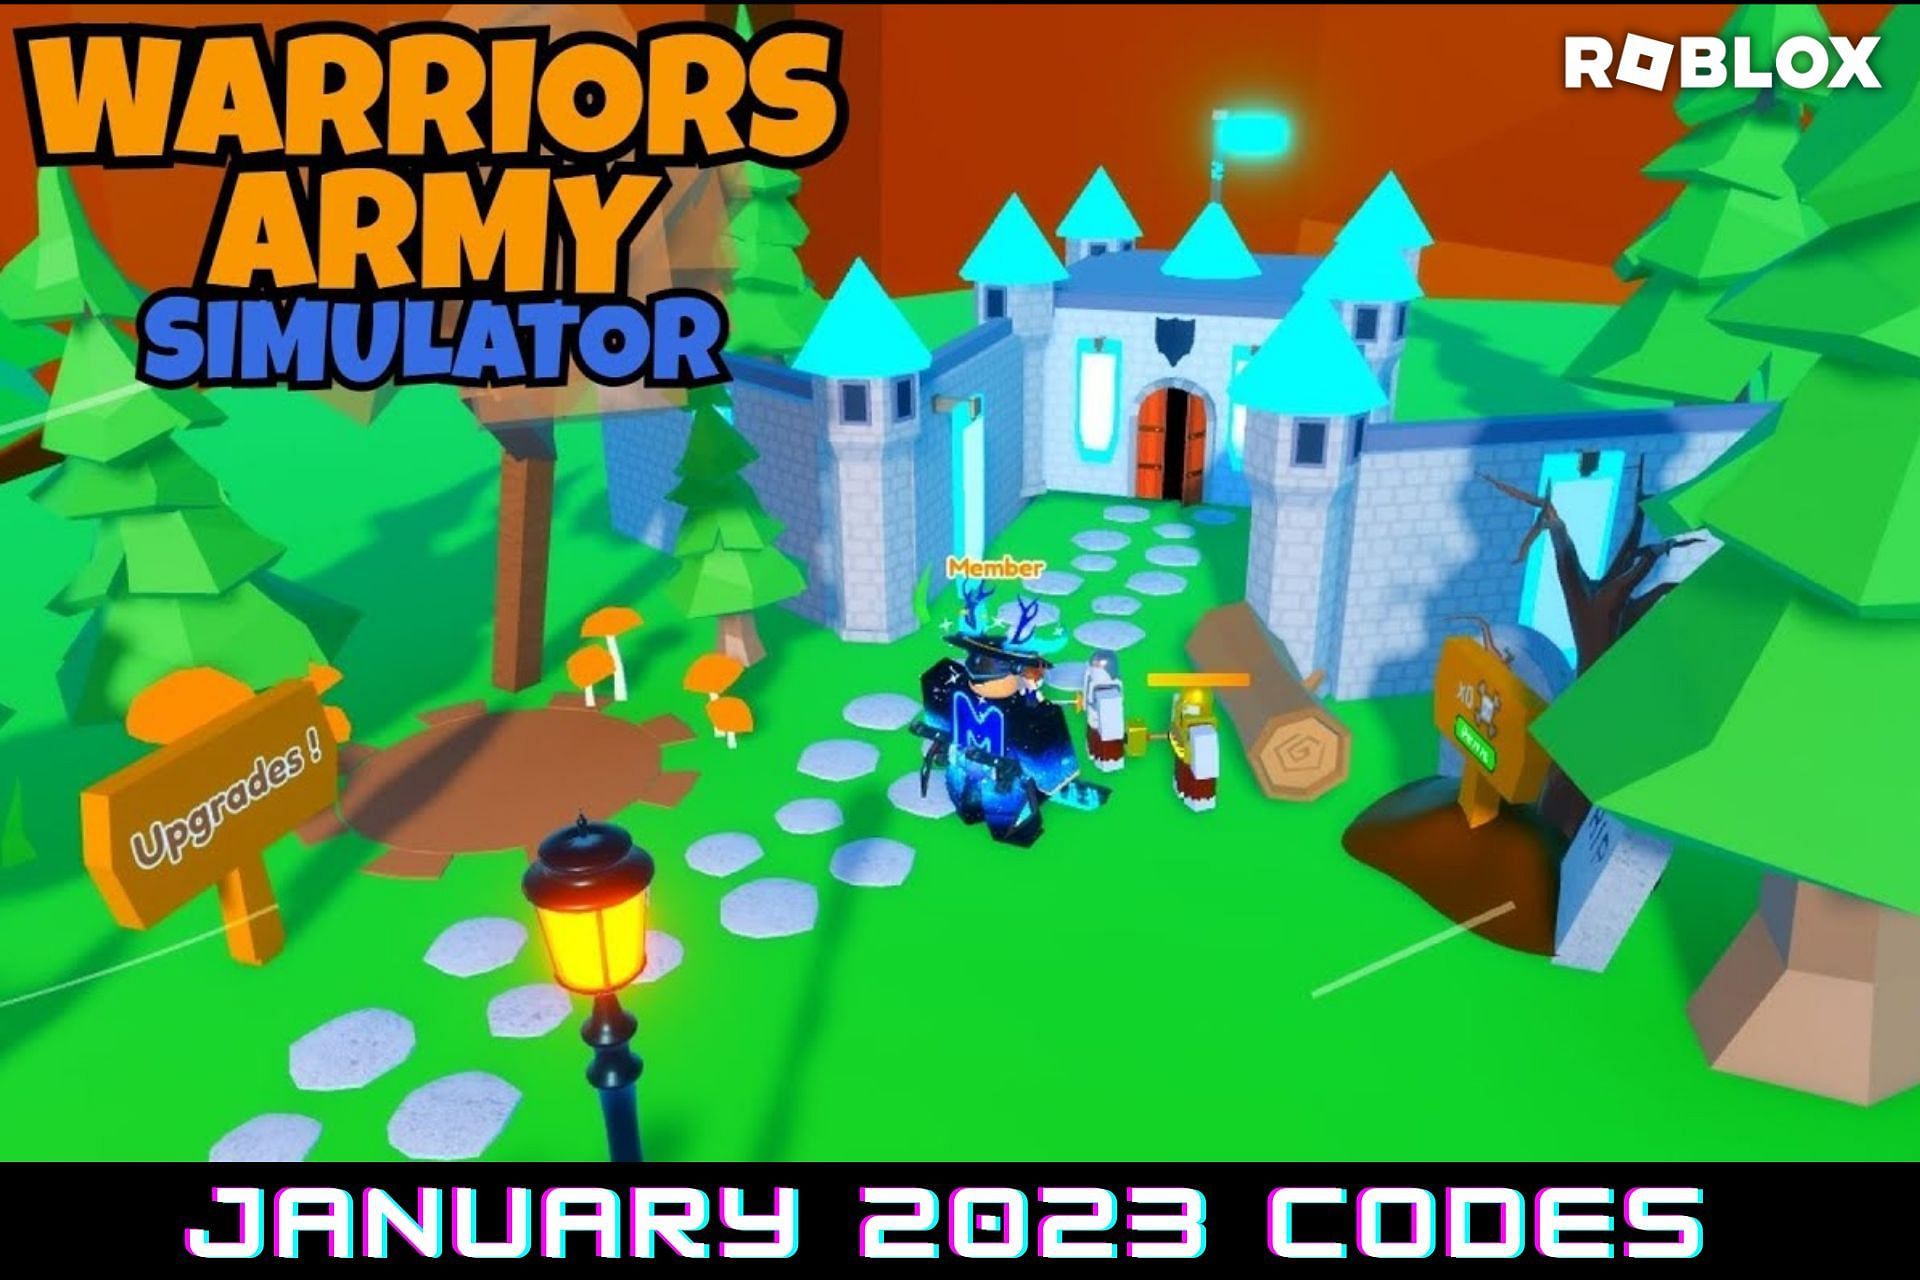 Roblox Warriors Army Simulator Gameplay